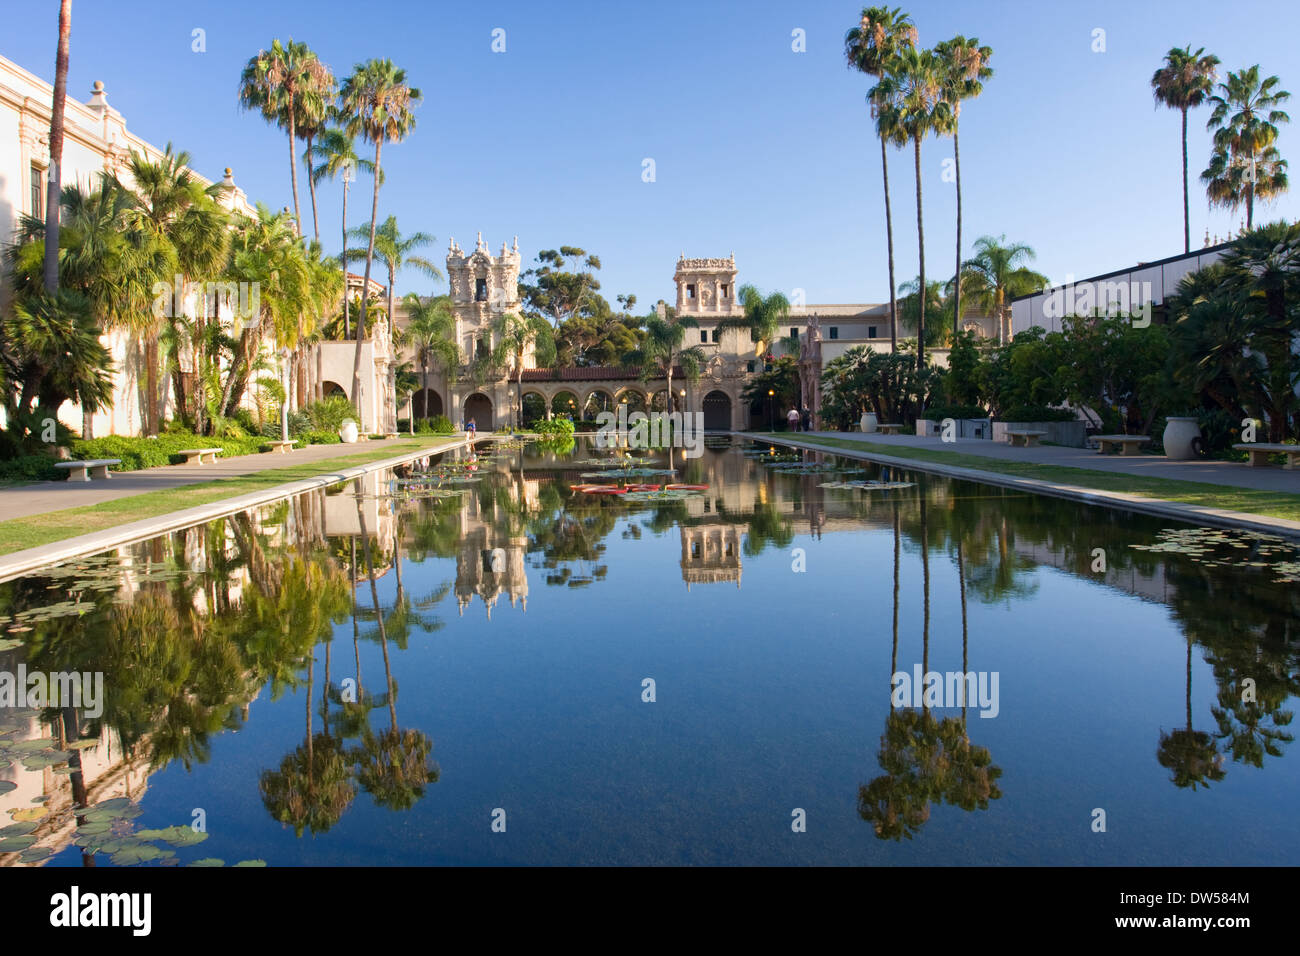 Balboa Park di San Diego, architettura spagnola e riflessioni, CALIFORNIA, STATI UNITI D'AMERICA Foto Stock